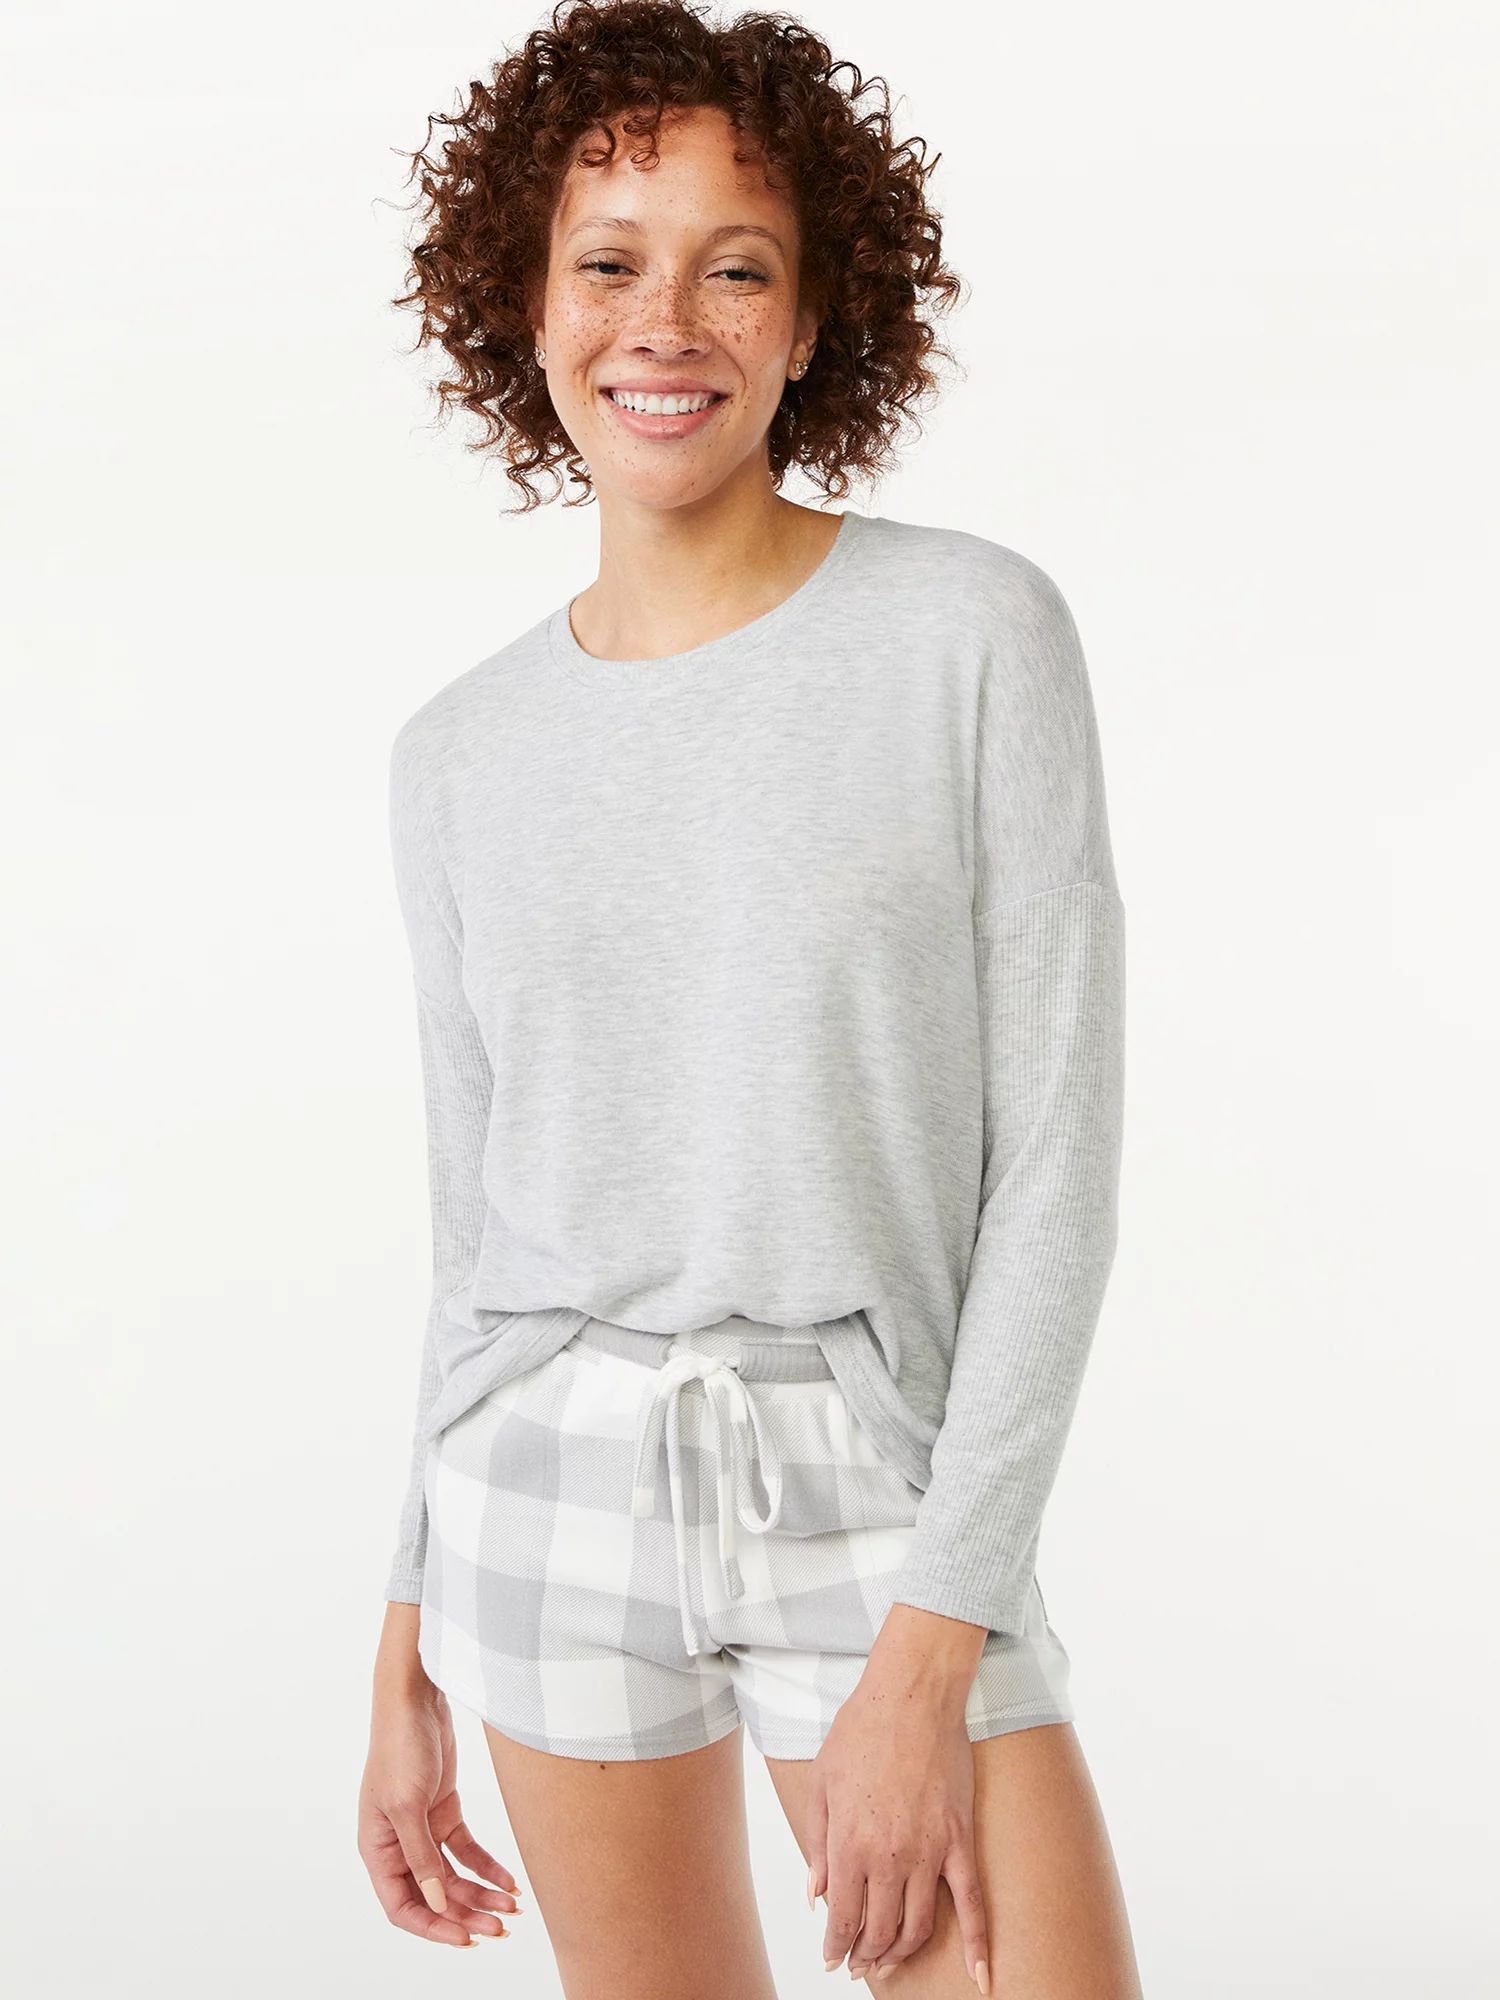 Joyspun Women’s Long Sleeve Top and Shorts Pajama Set, 2-Piece, Sizes up to 3X | Walmart (US)